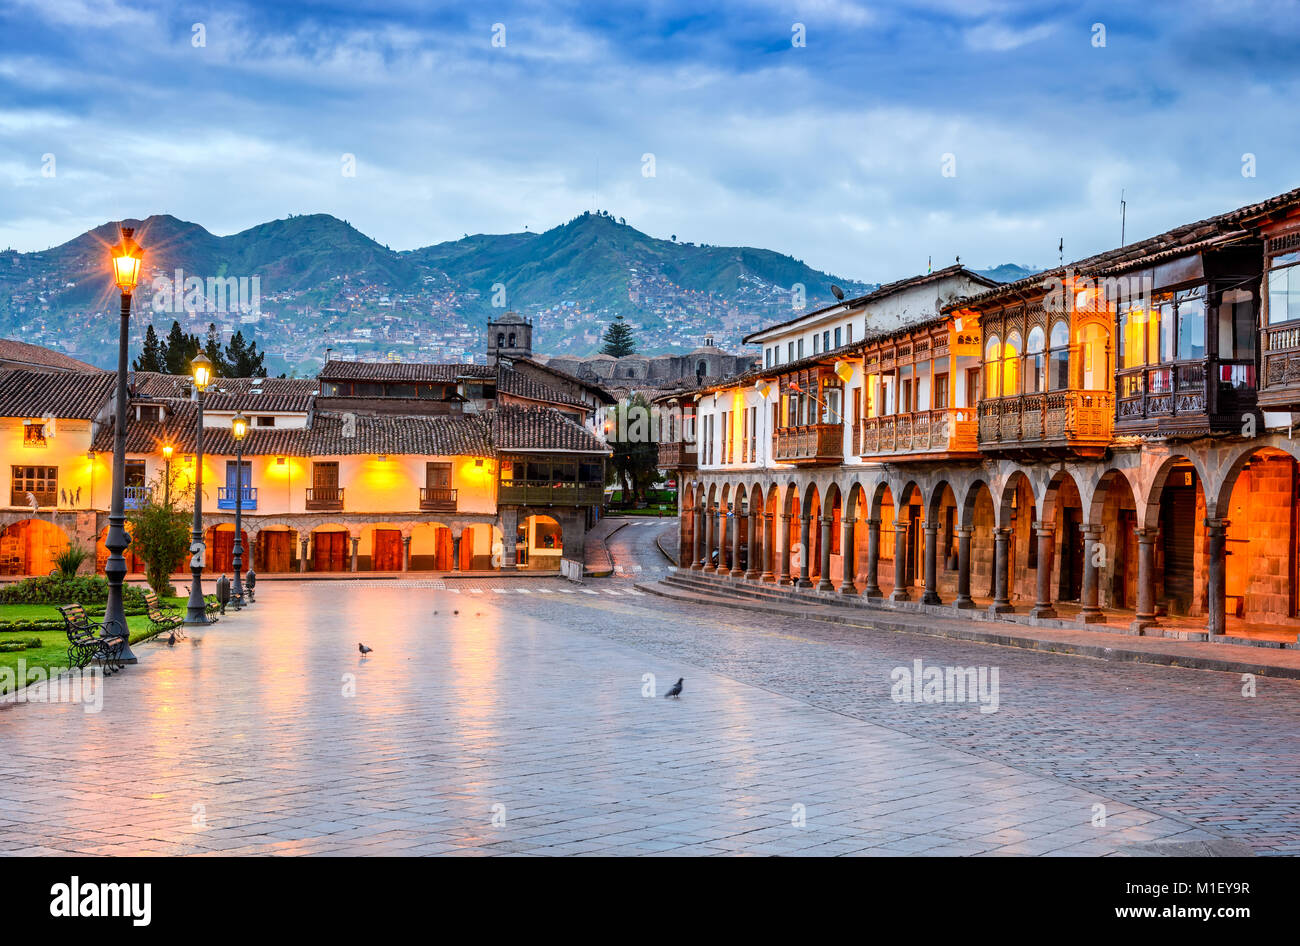 Cusco, Perù - Plaza de Armas, coloniale architettura spagnola nelle montagne delle Ande, Sud America. Foto Stock